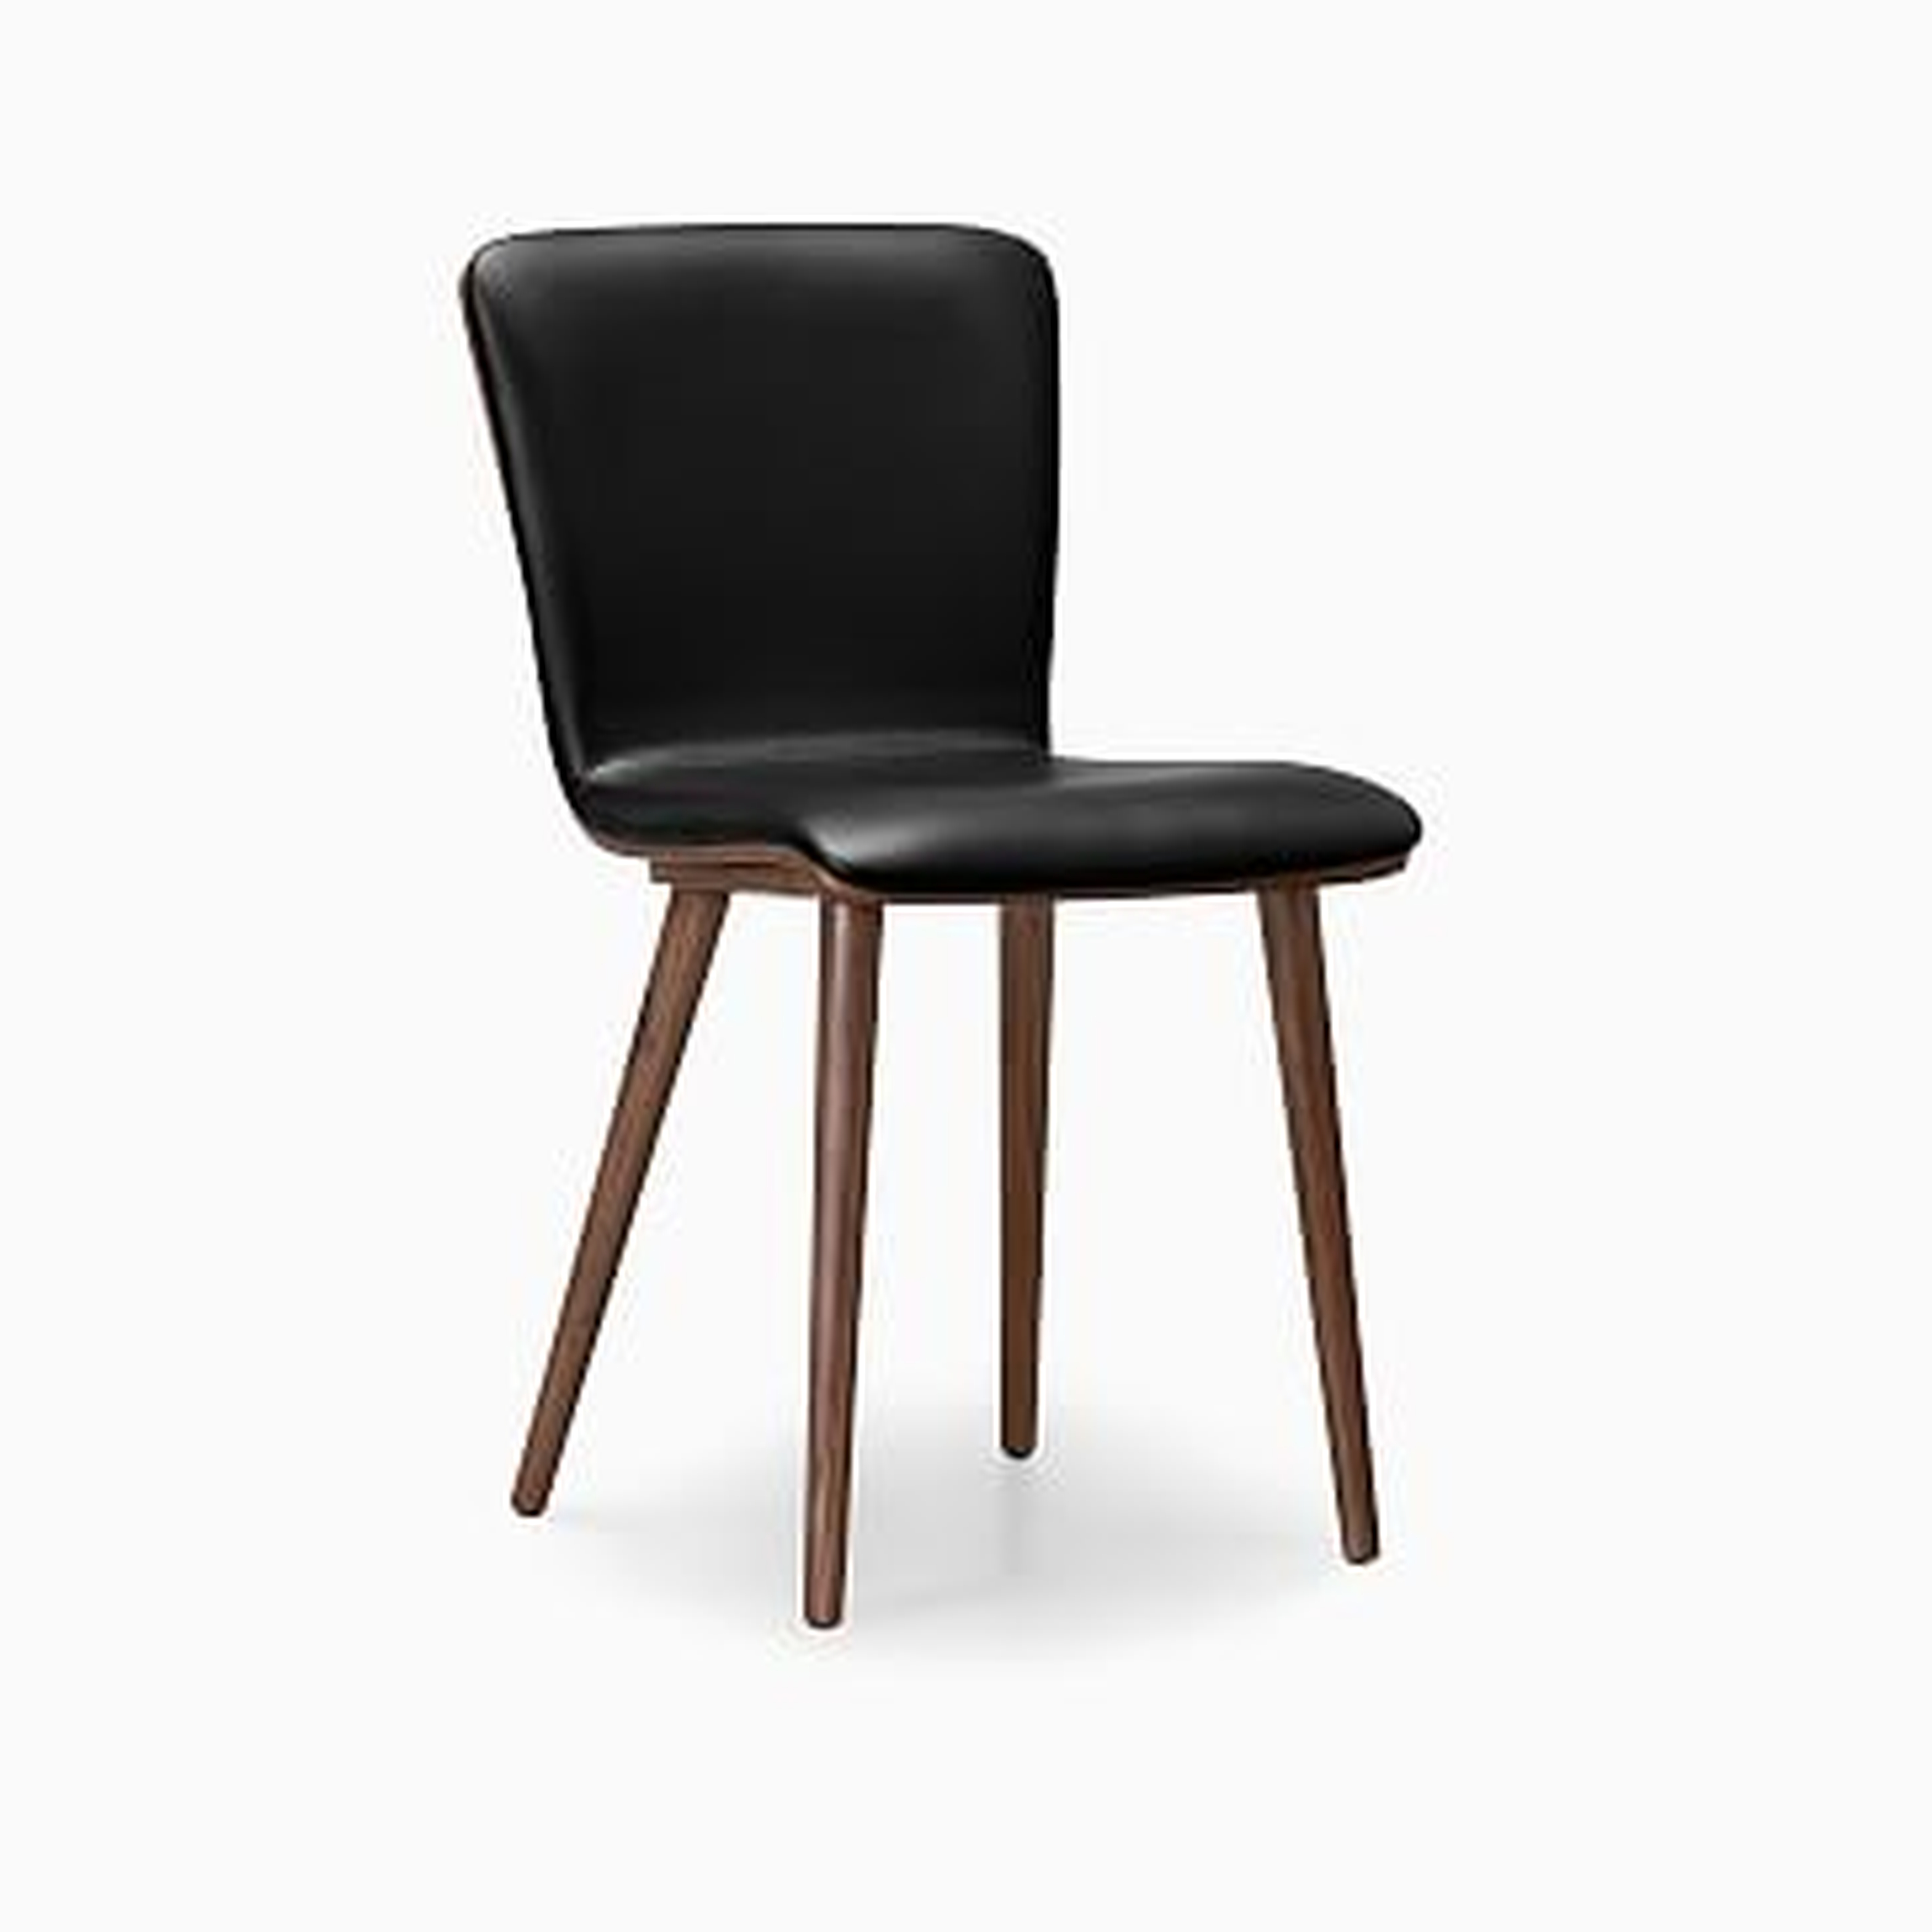 Boulder Leather Dining Chair, Black, Set of 2 - West Elm